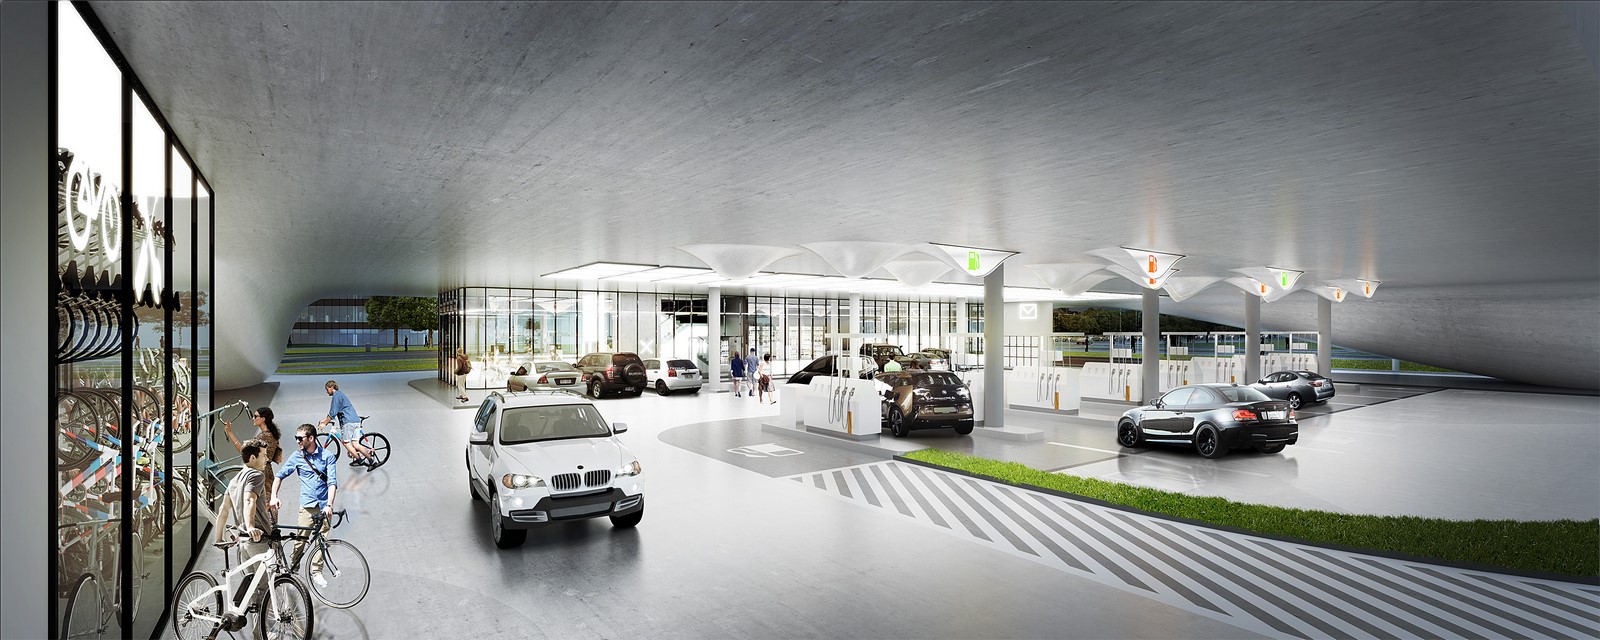 Filling Station by KAMJZ Architects: Innovative Future Project - Sheet8